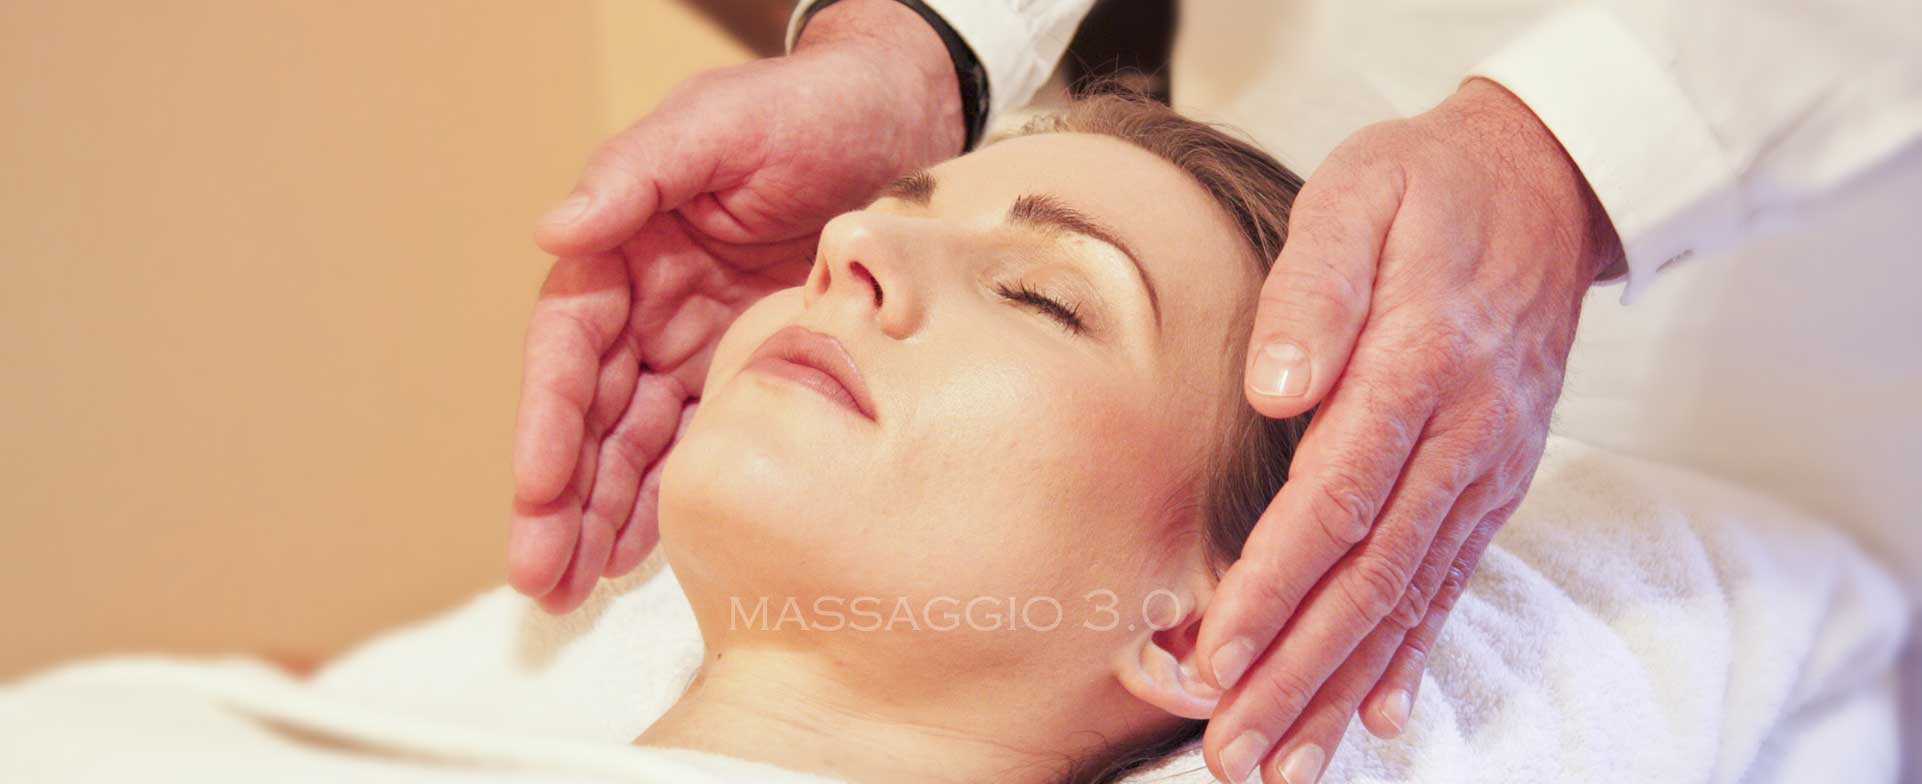 massaggio esperienza sensoriale